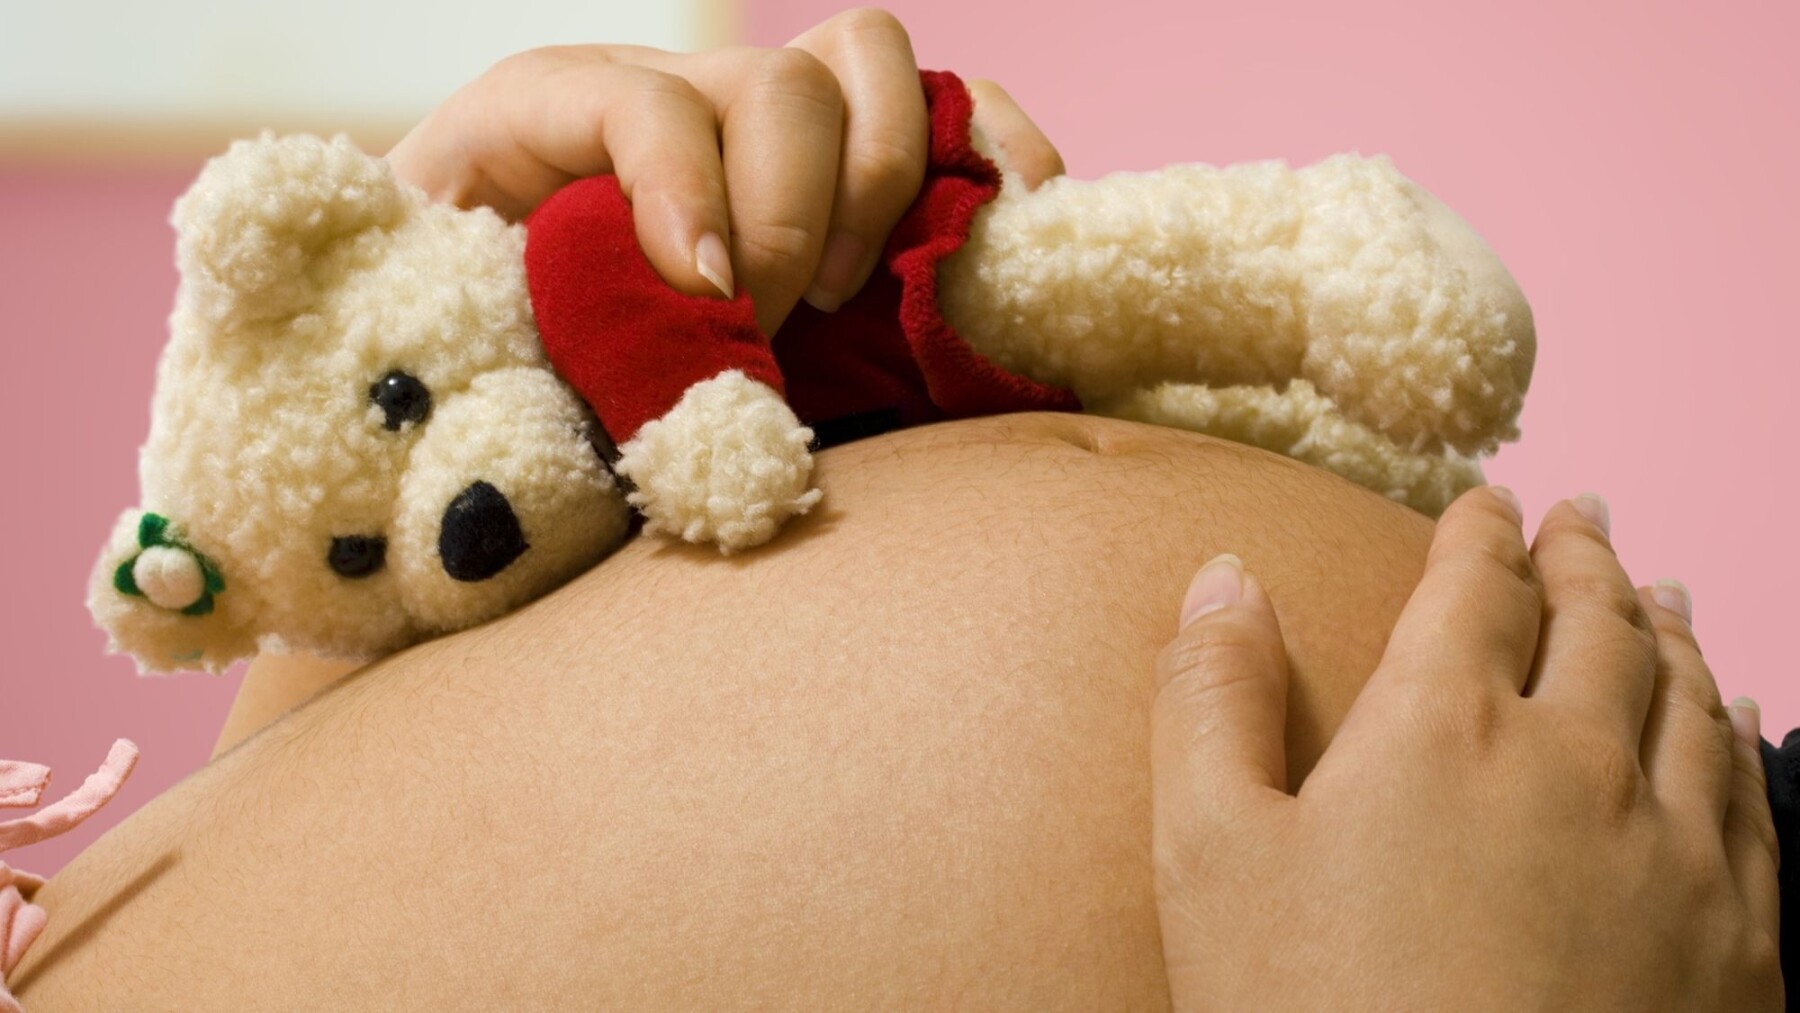 Placenta : 7 fonctions vitales pour votre bébé